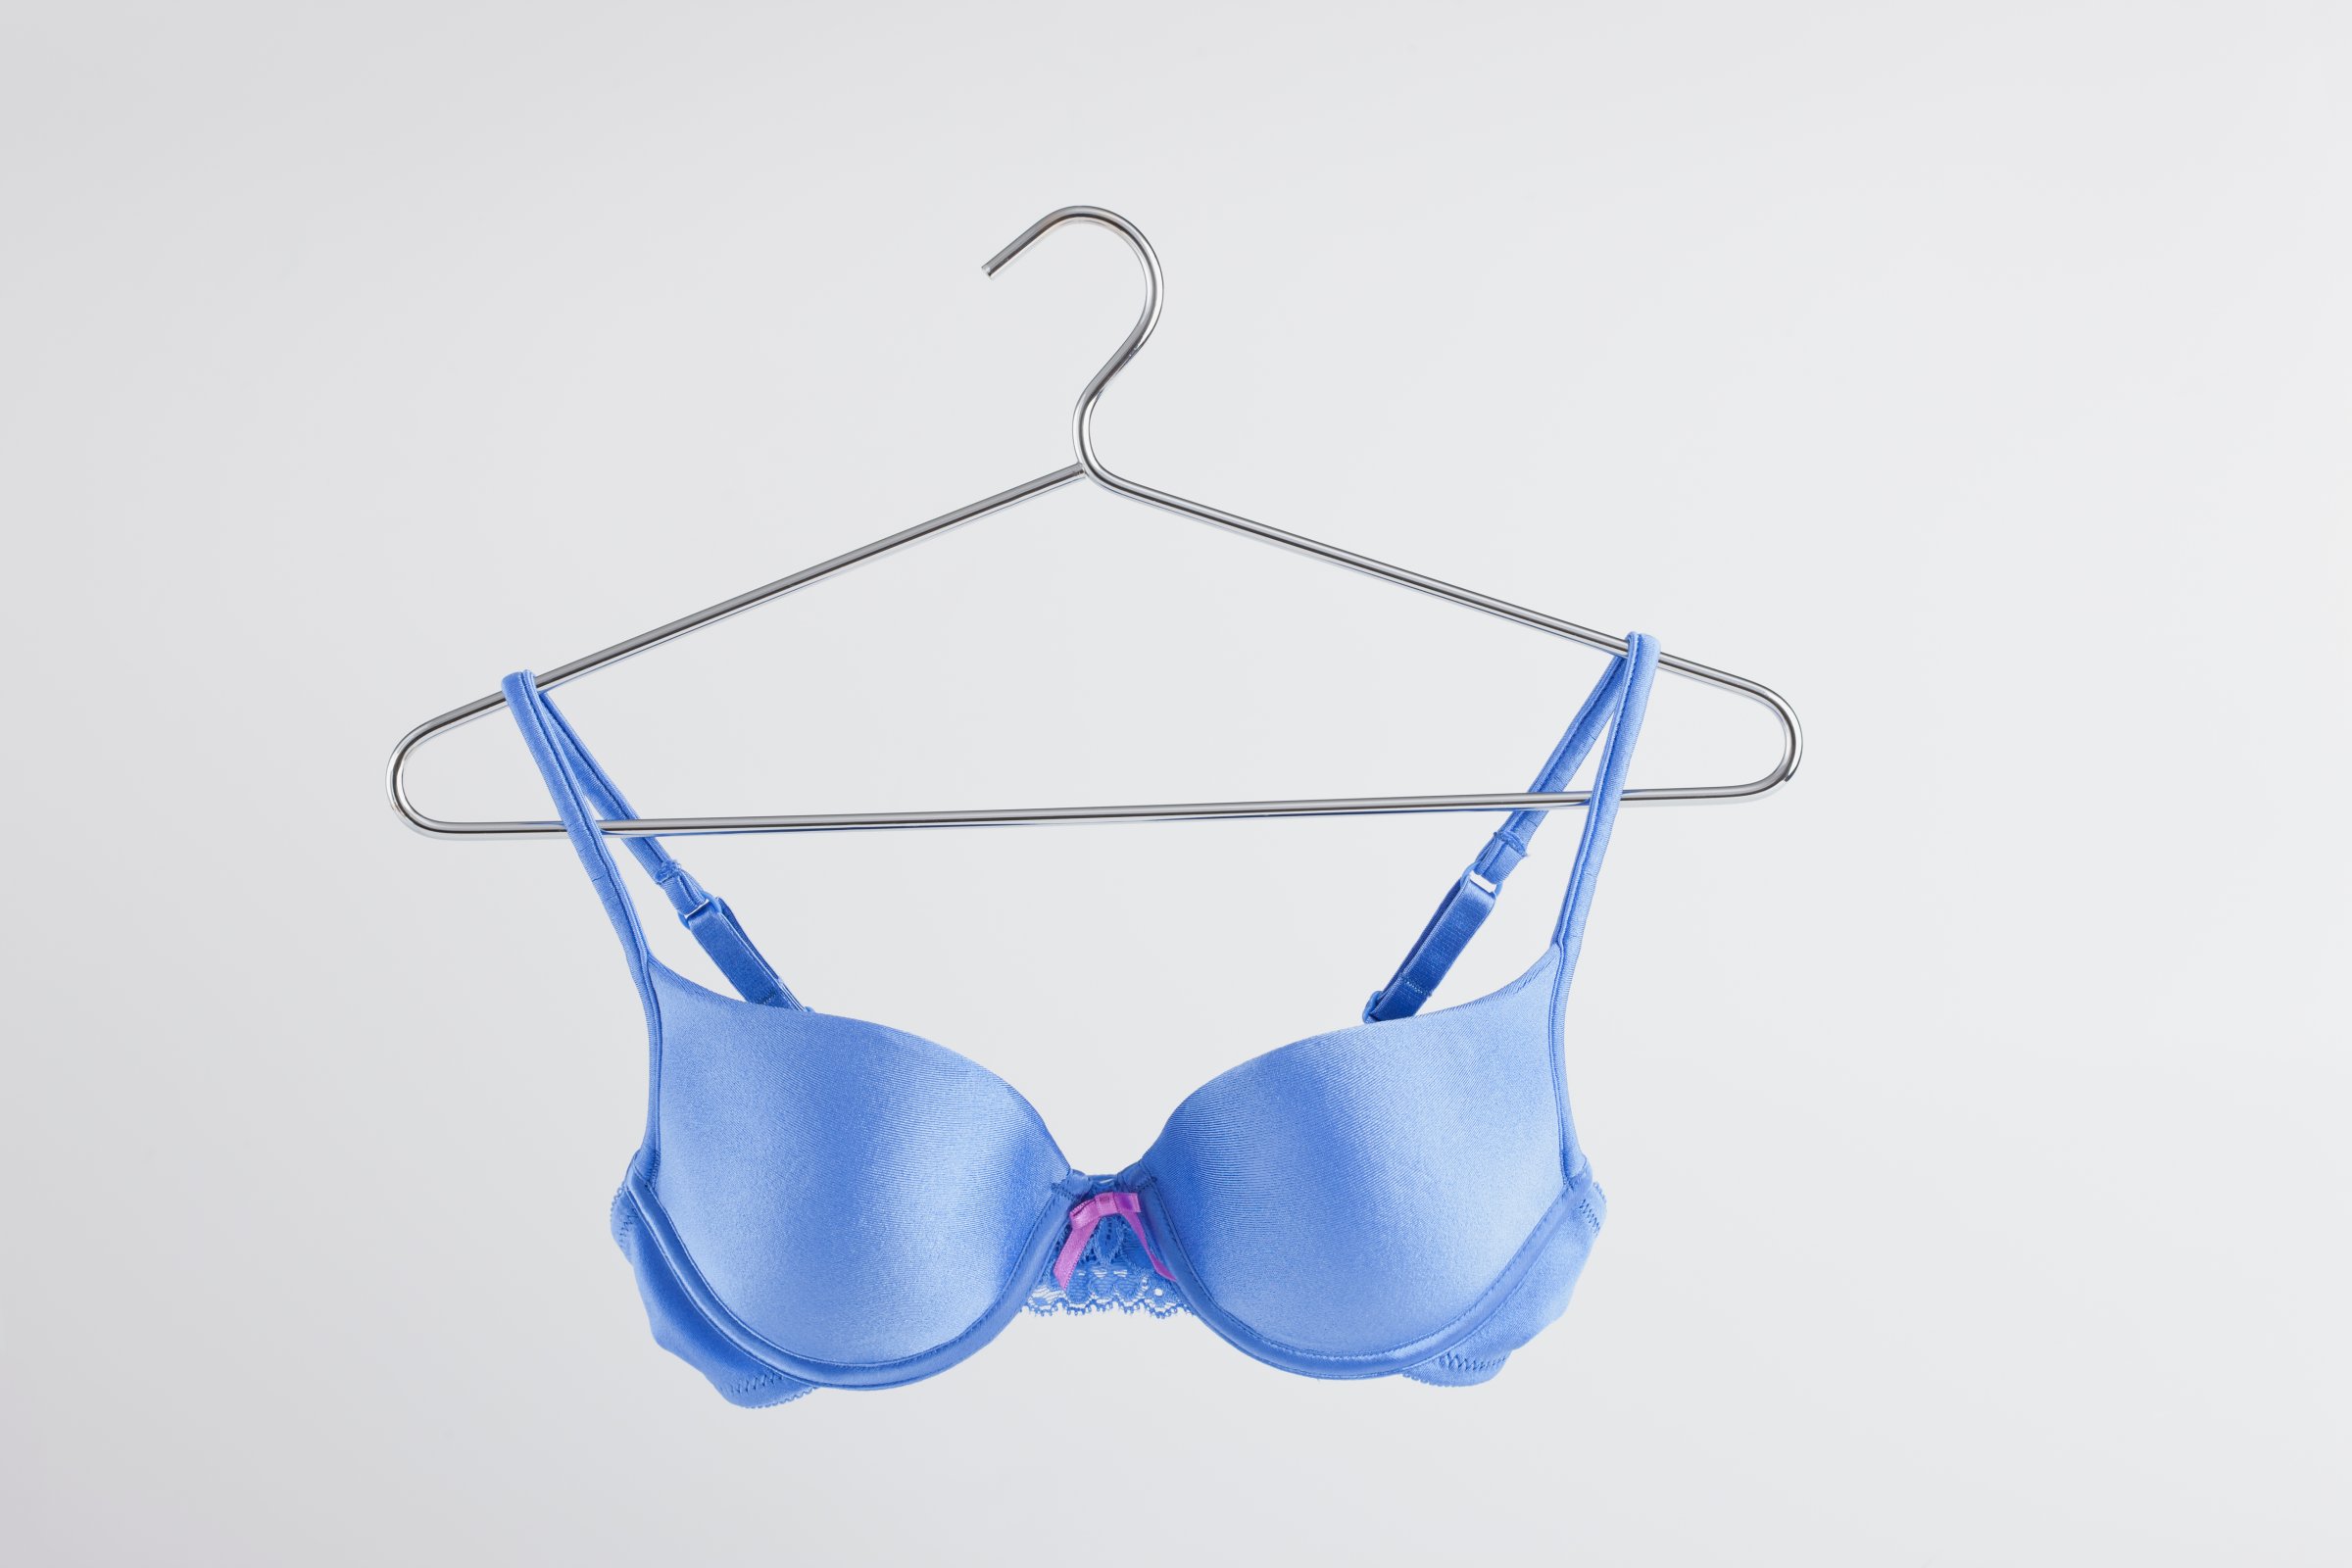 Blue bra on hanger